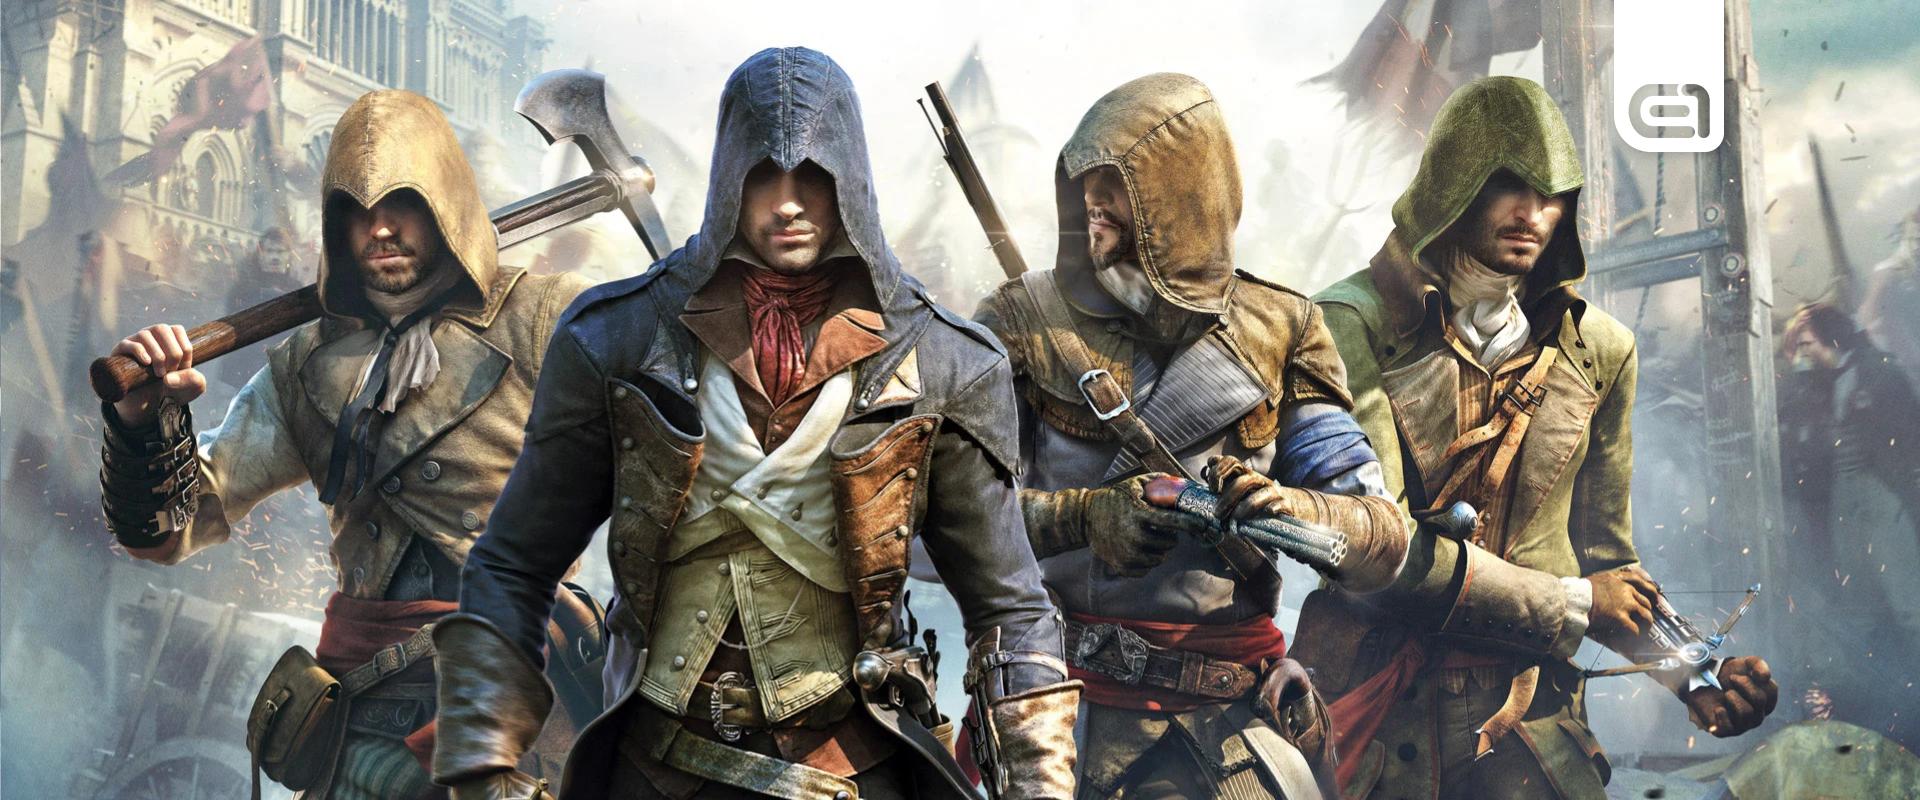 Már te is regisztrálhatsz az egyik legújabb Assassin's Creed-játékra!